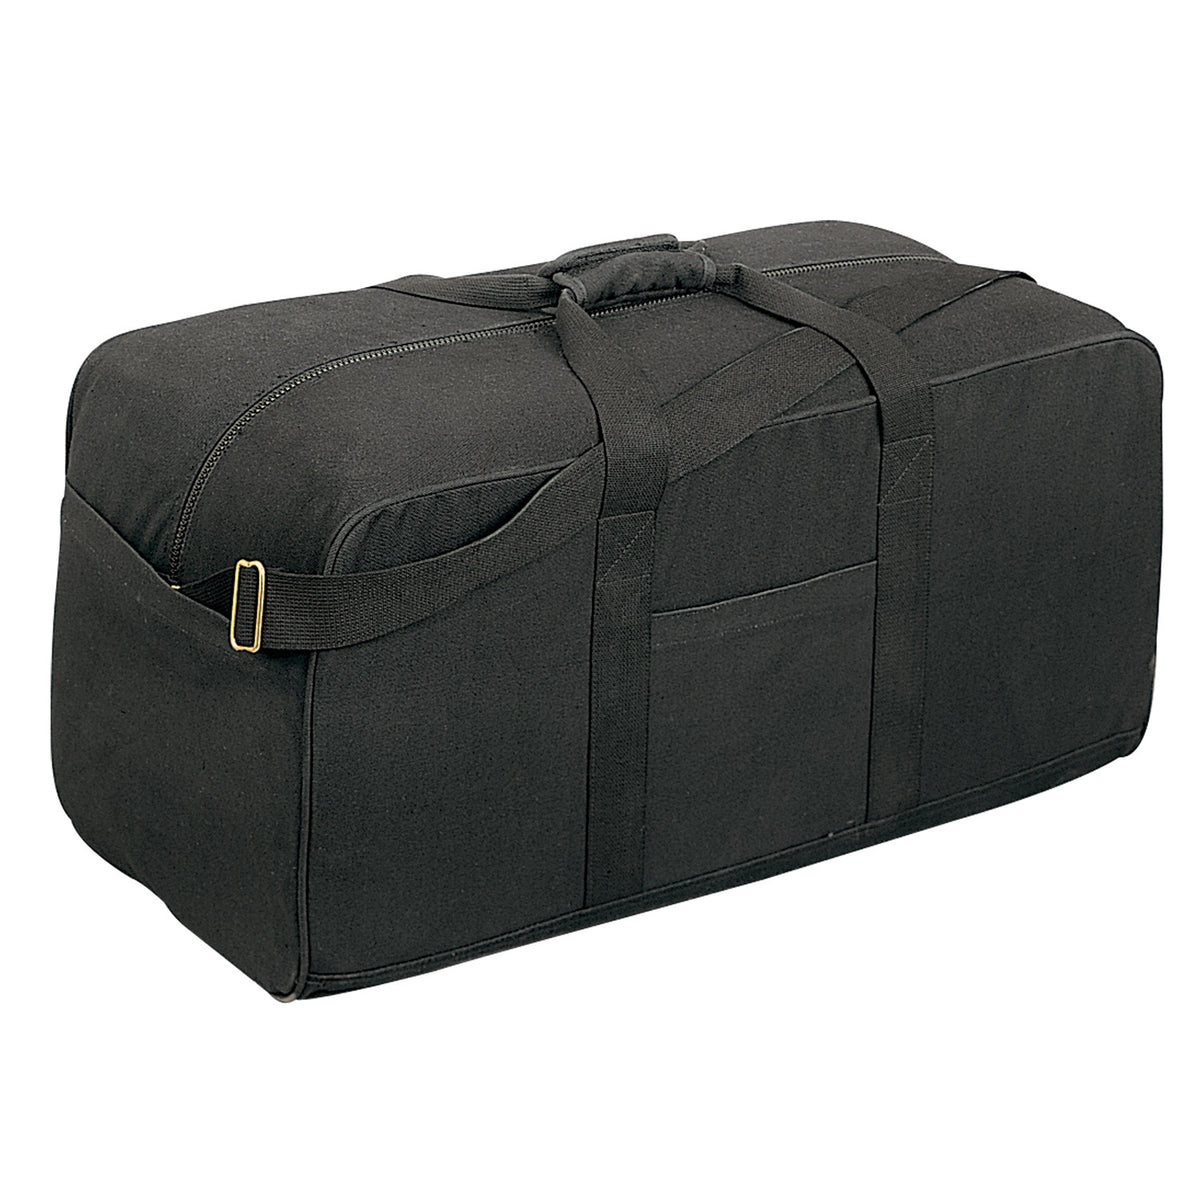 Rothco Canvas Assault Cargo Bag - Black